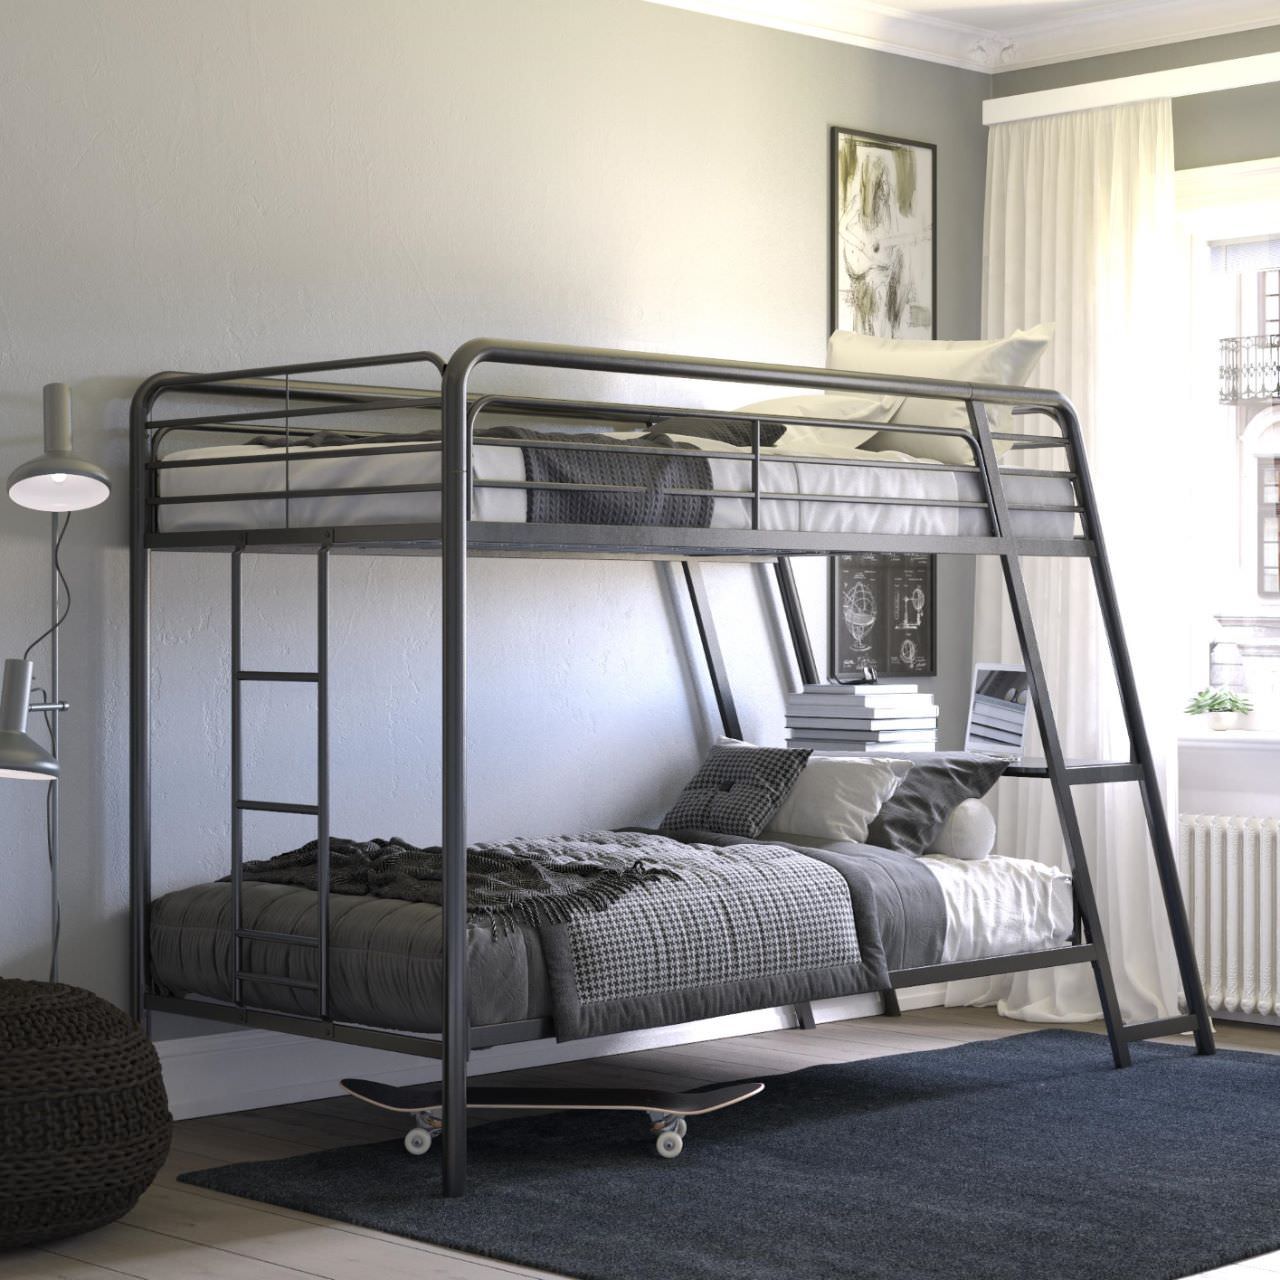 Giường tầng thông minh bằng sắt cho phòng ngủ nhỏ 2 người